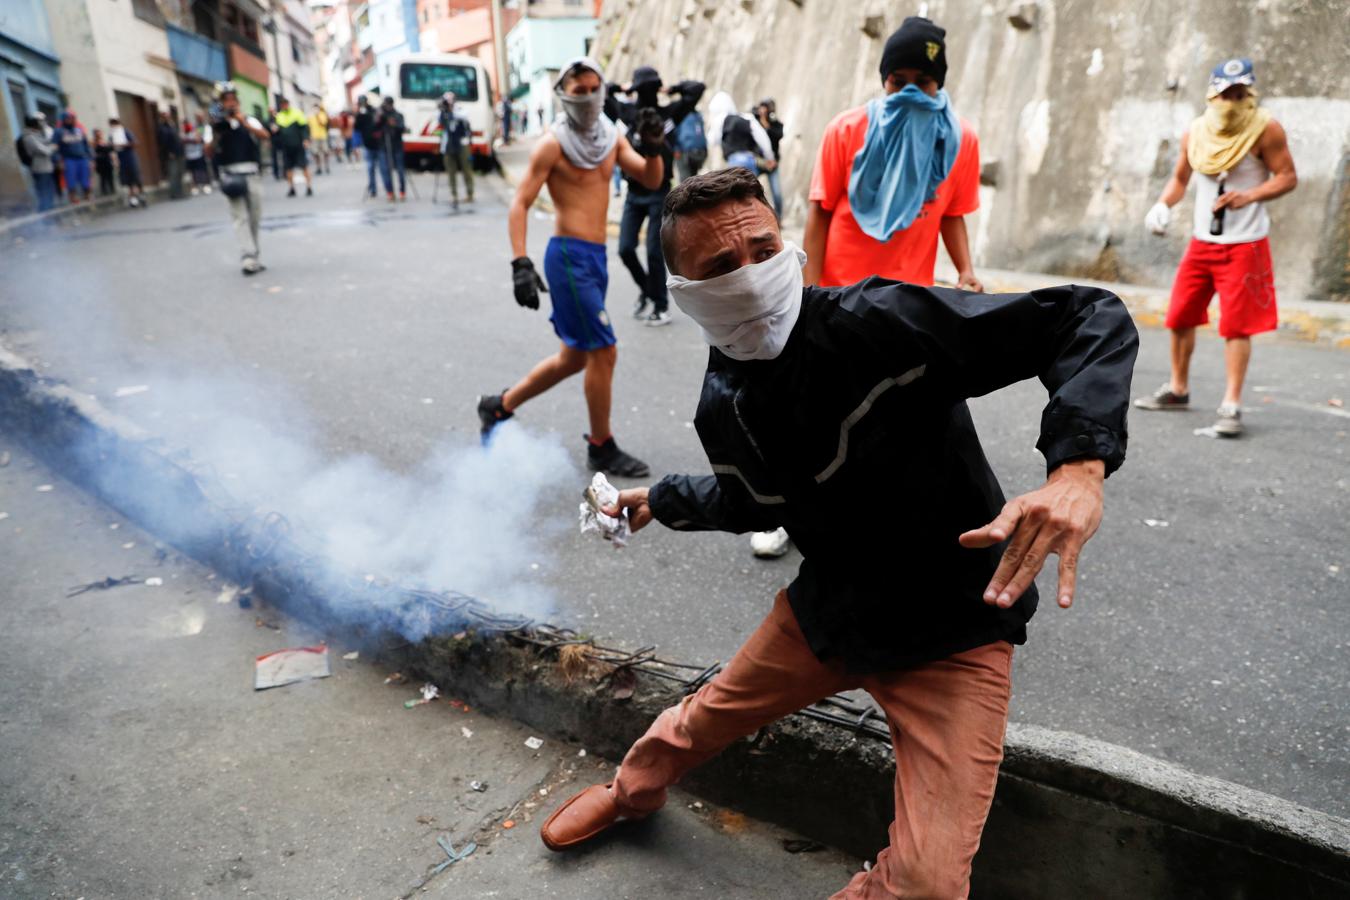 Las imágenes más dramáticas de la sublevación militar en Venezuela. Un chico lanza una piedra a los efectivos de la Policía